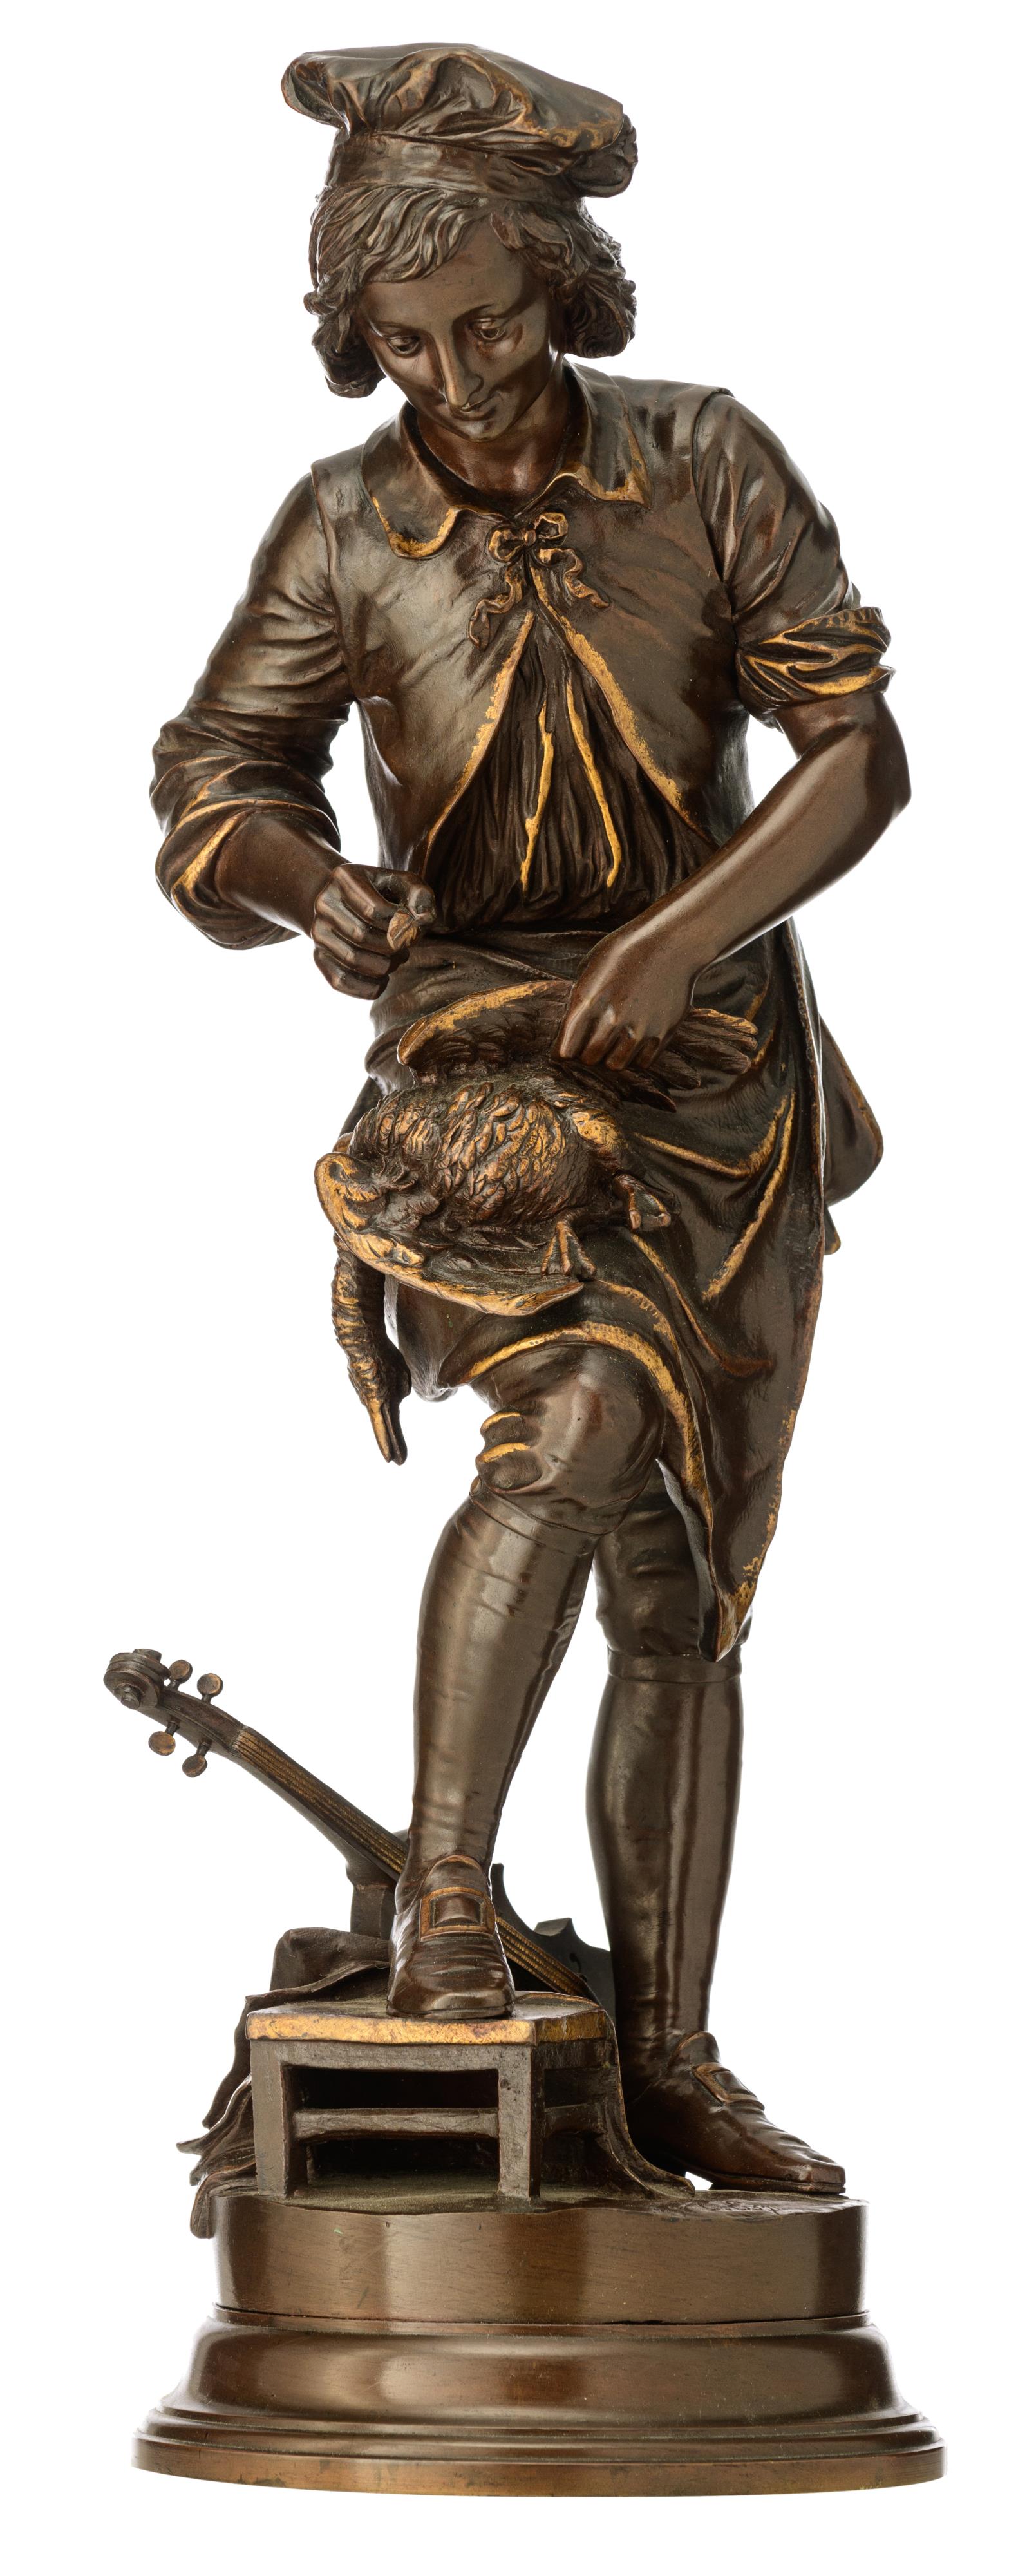 Espi‚ A., 'Au clair de la lune', a patinated bronze sculpture, H 53 cm